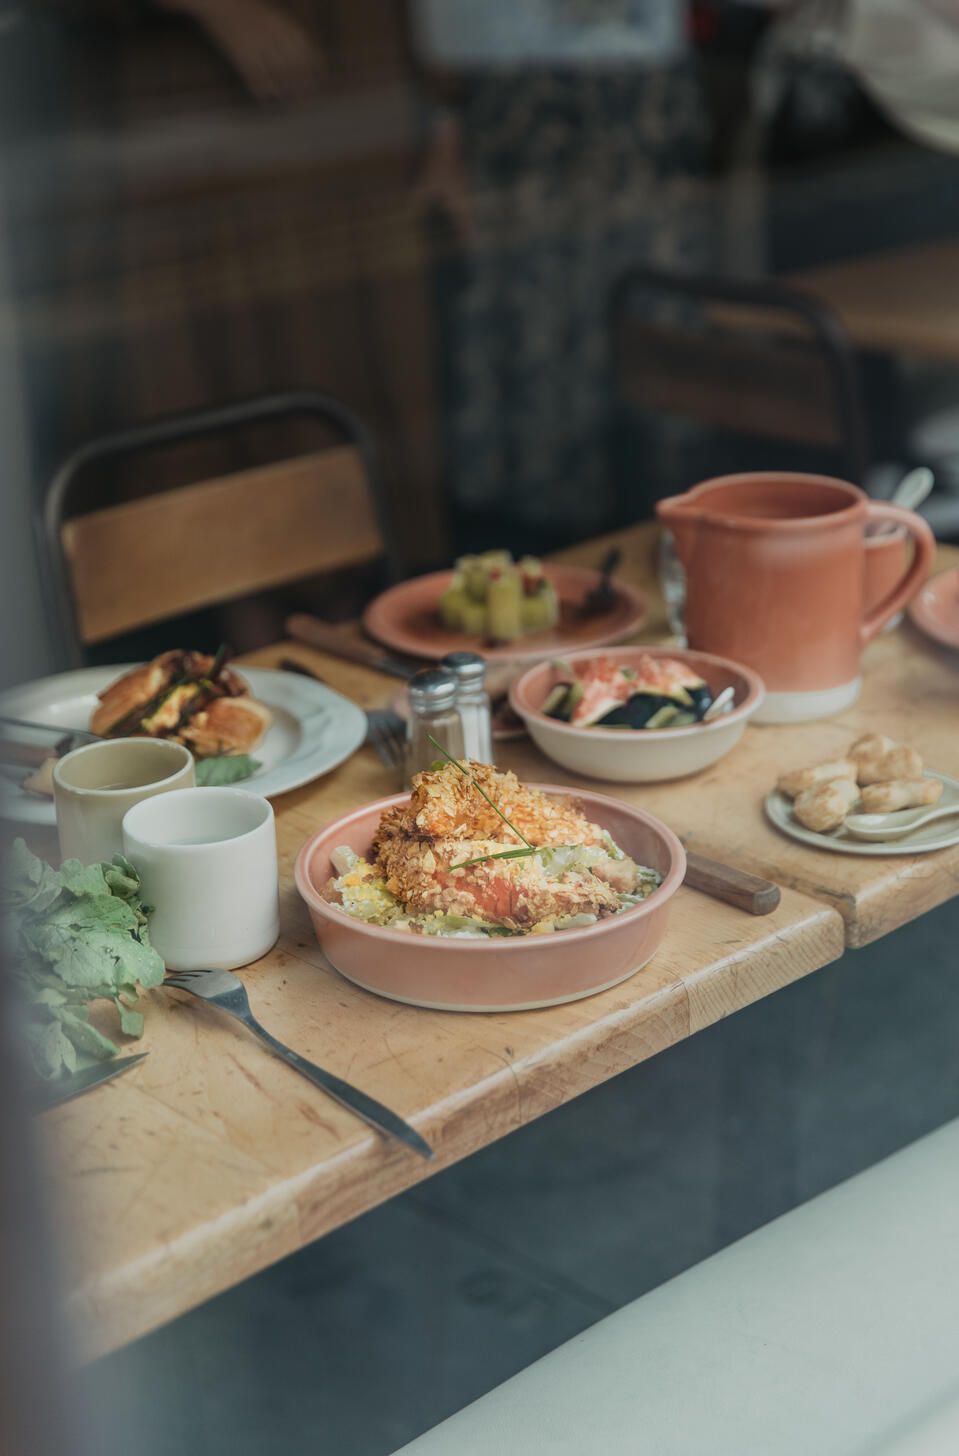 Table de restaurant avec nourriture dans vaisselle en céramique haut de gamme Jars